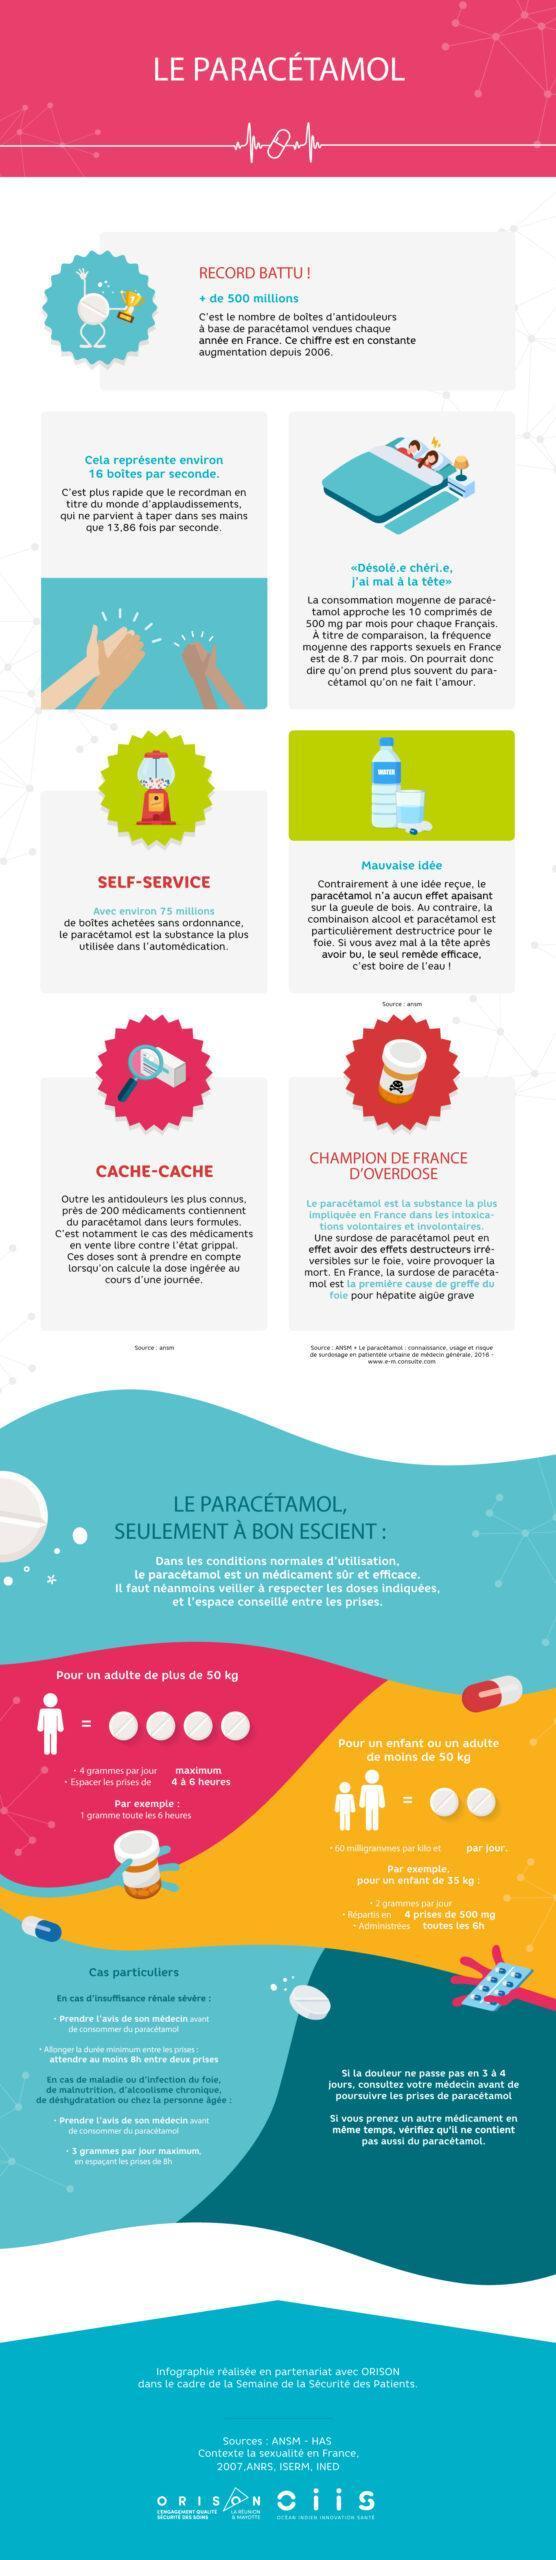 infographies_paracetamol